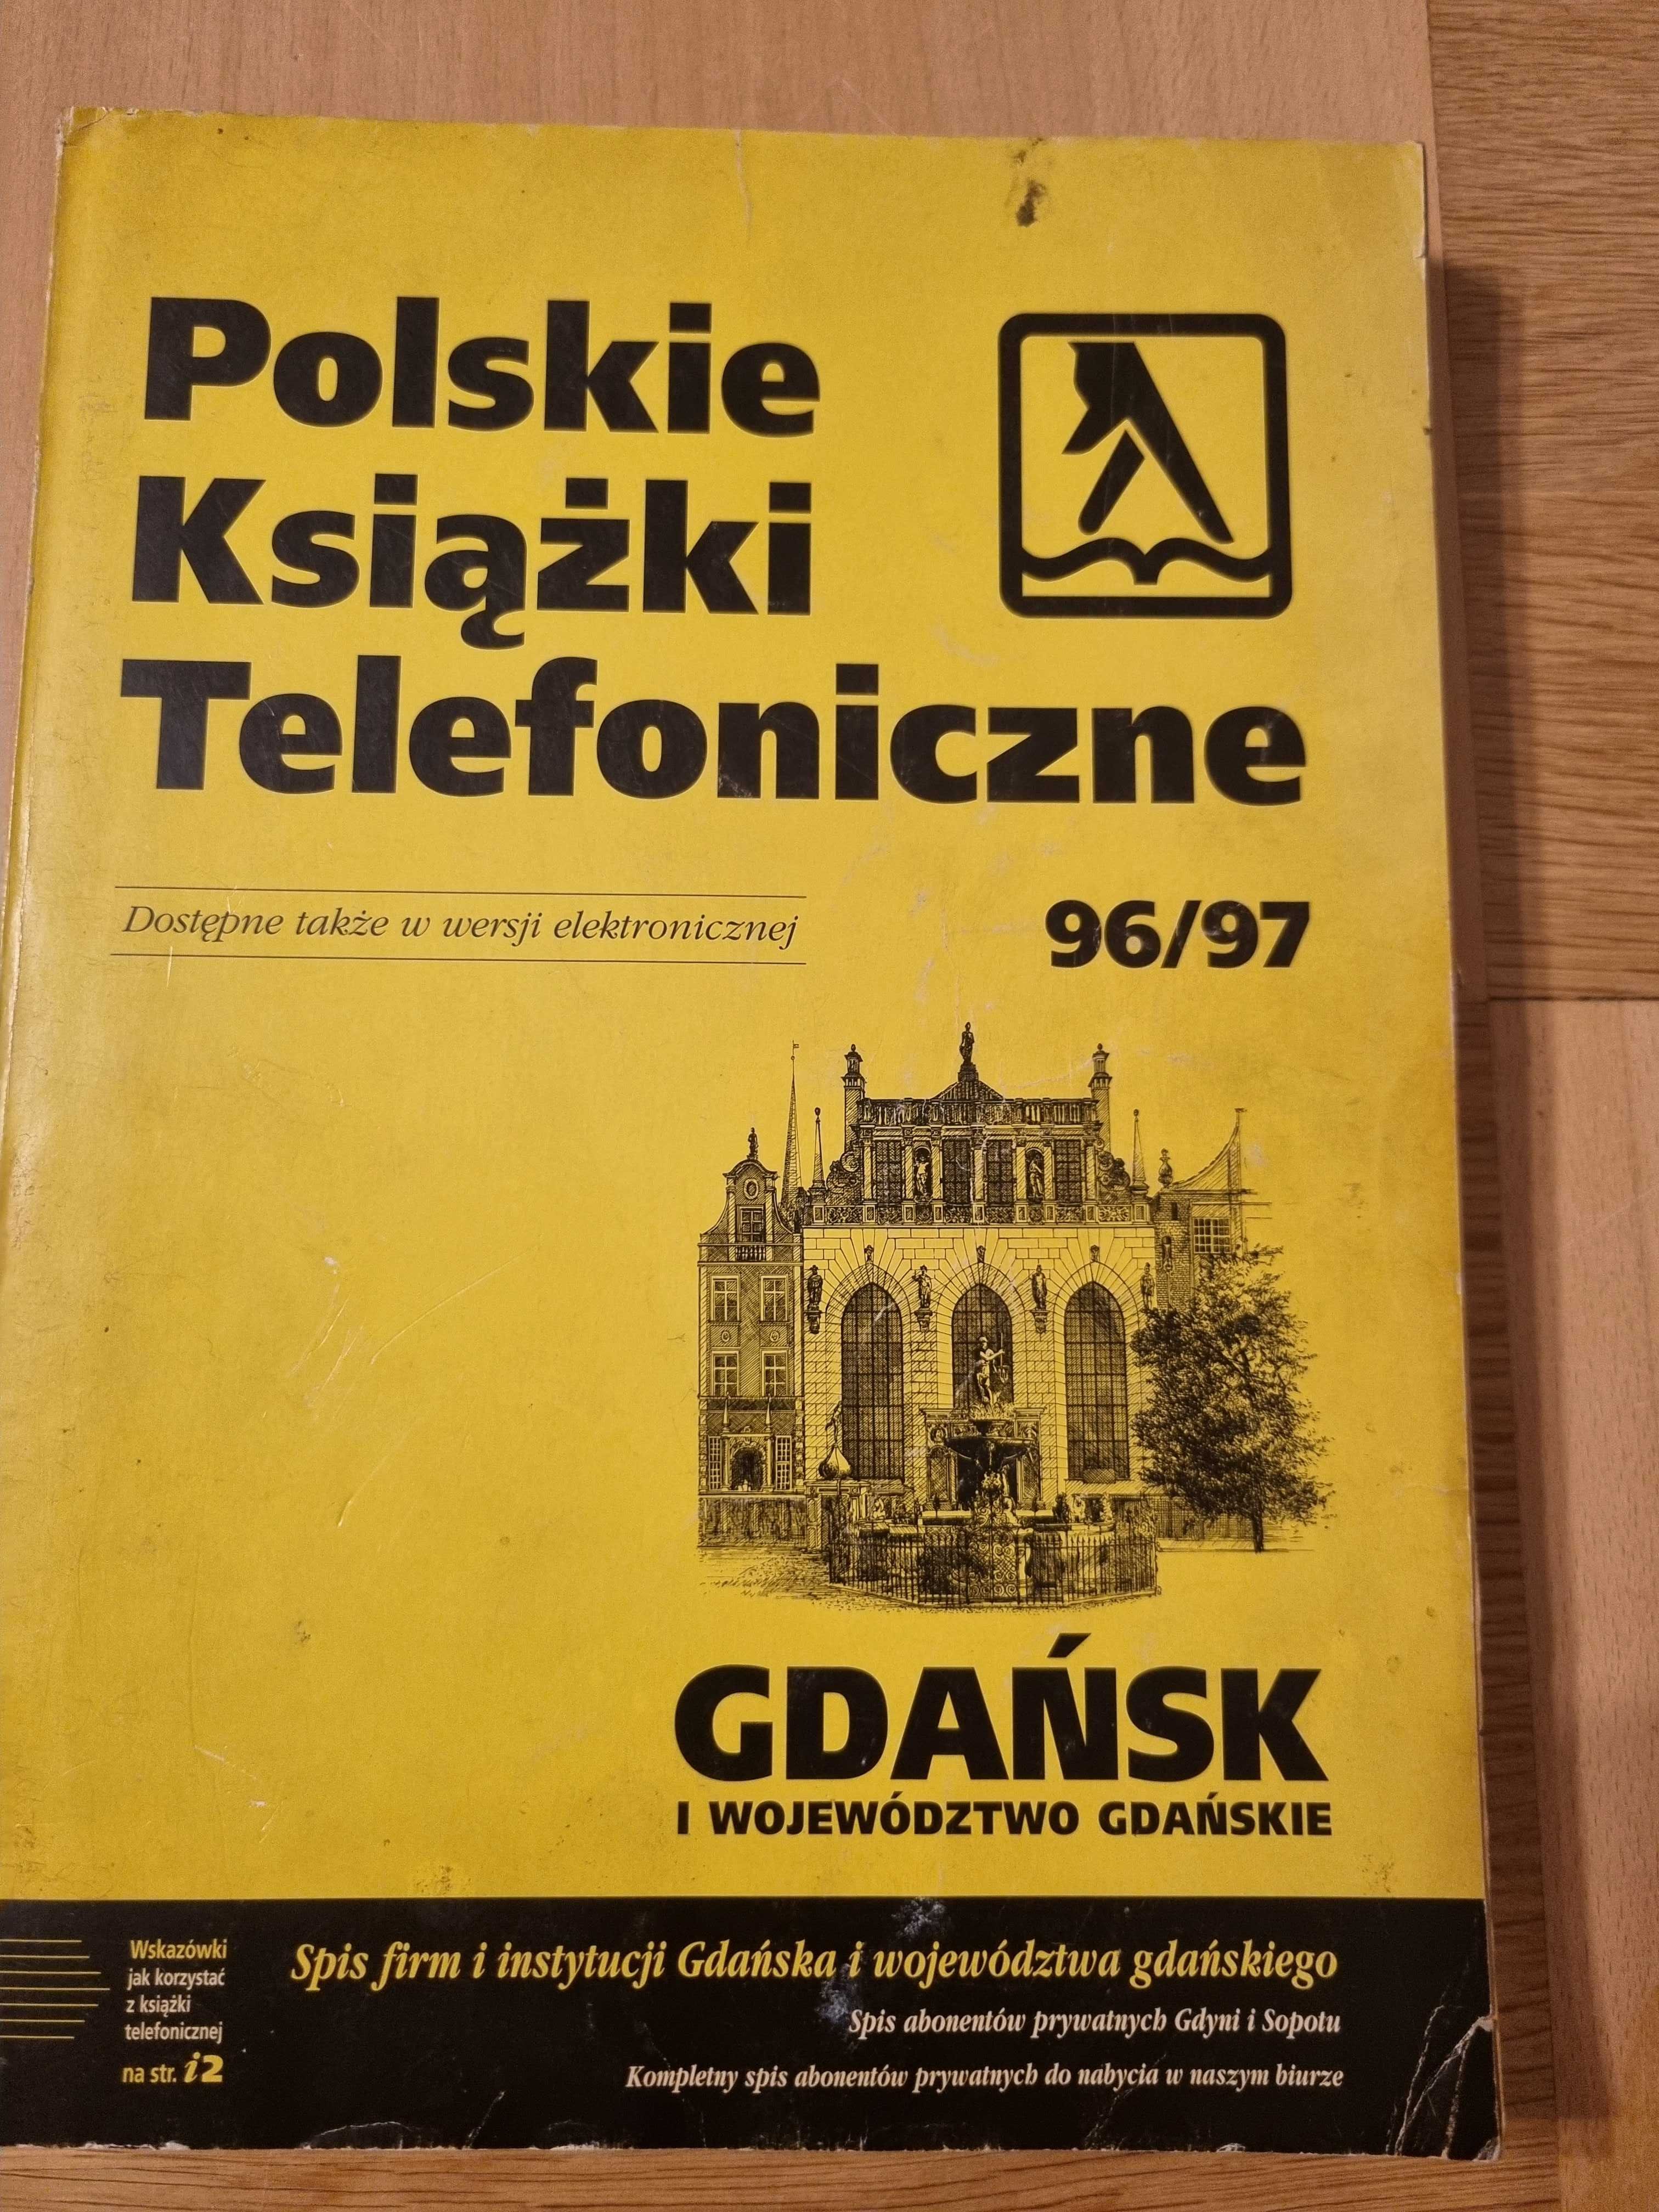 Książka telefoniczna woj gdańskie z roku 1996/97